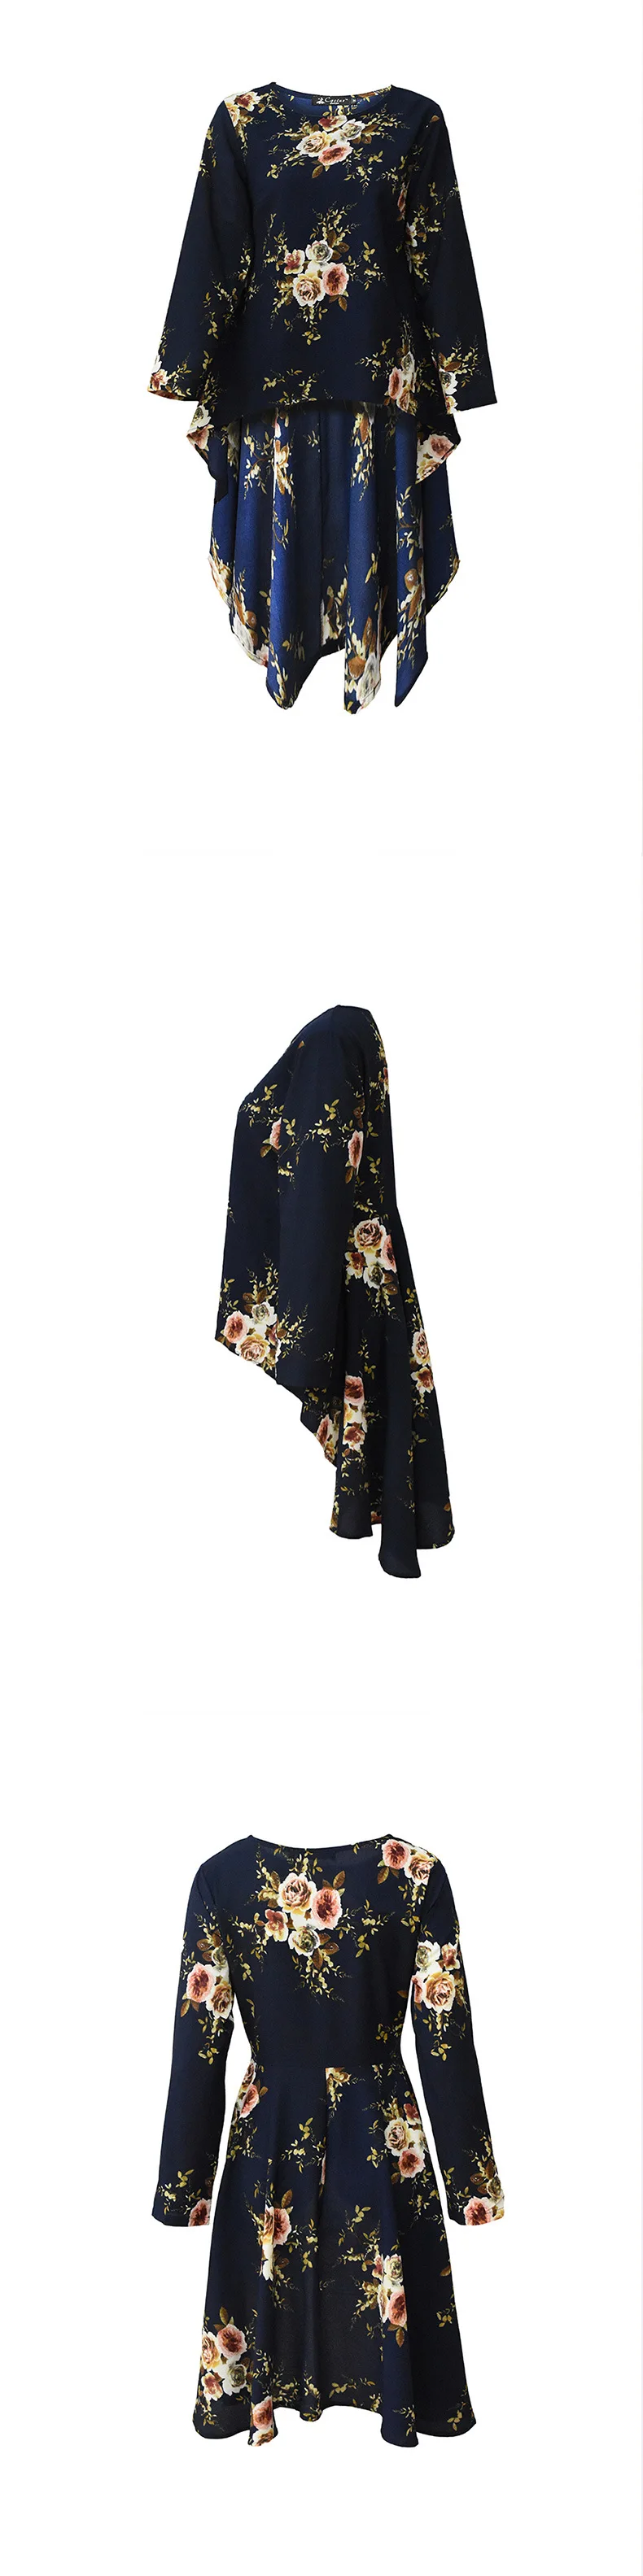 Мусульманский абайя платье рубашка блузка Топы корректирующие с цветочным принтом свободные стиль плюс размеры исламская костюмы Ближний